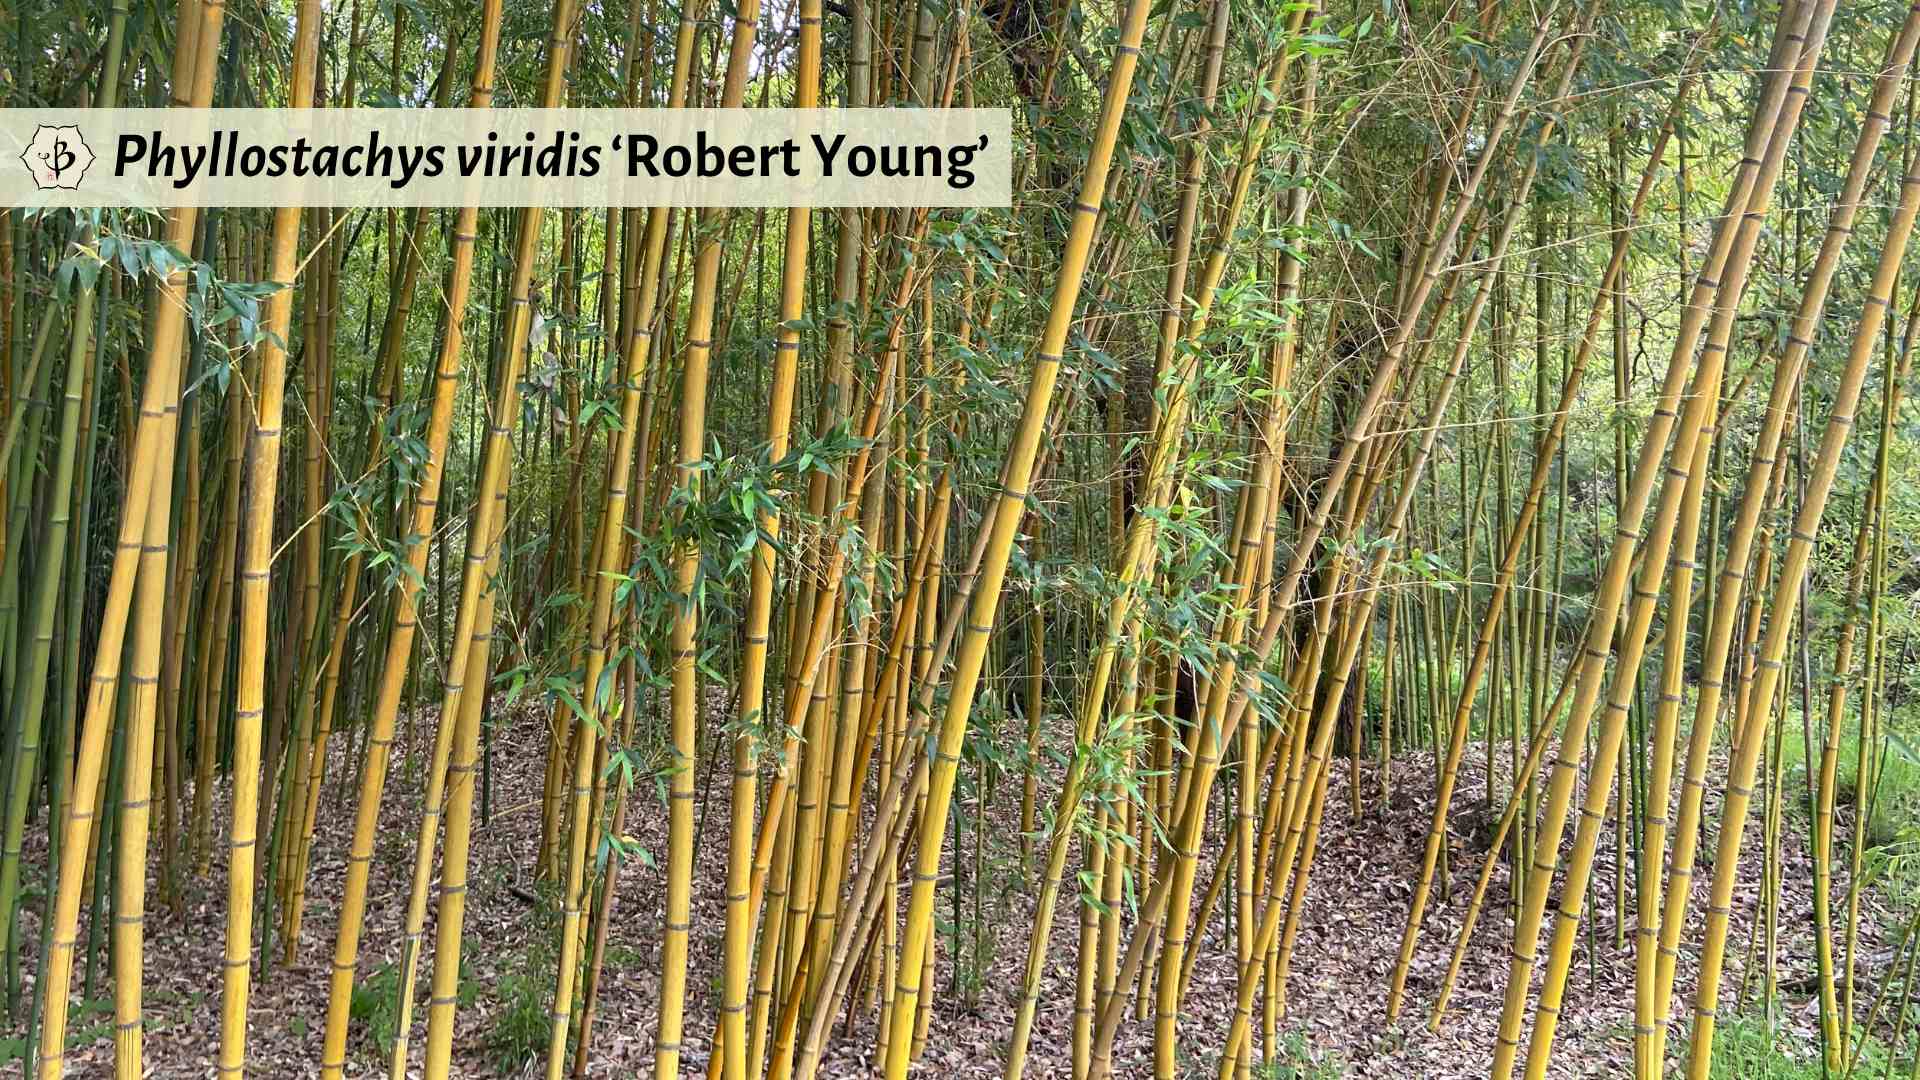 Phyllostachys viridis Robert Young golden bamboo